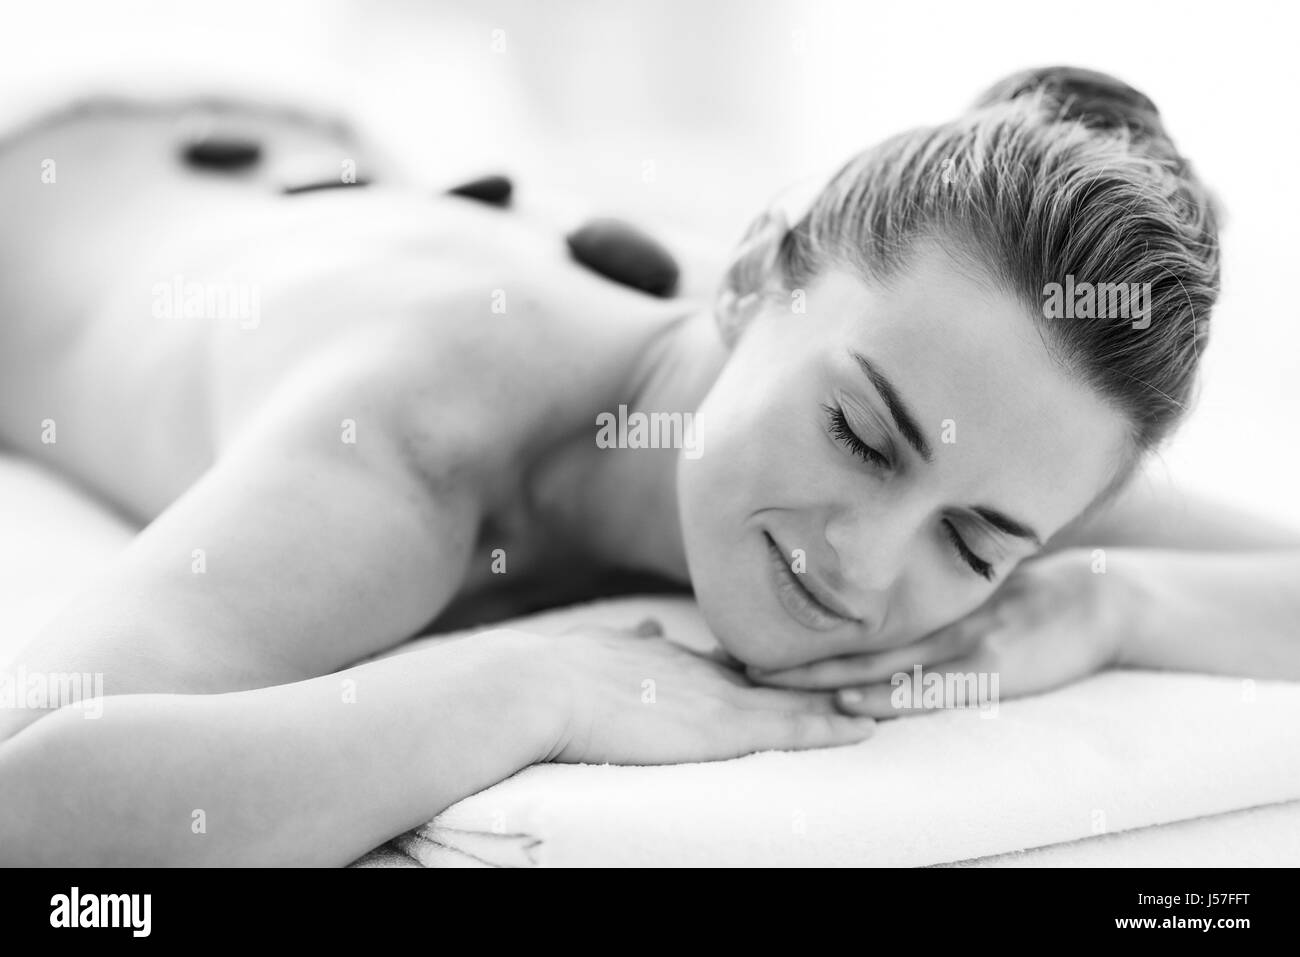 Retrato de relajado joven recibe el masaje con piedras calientes Foto de stock